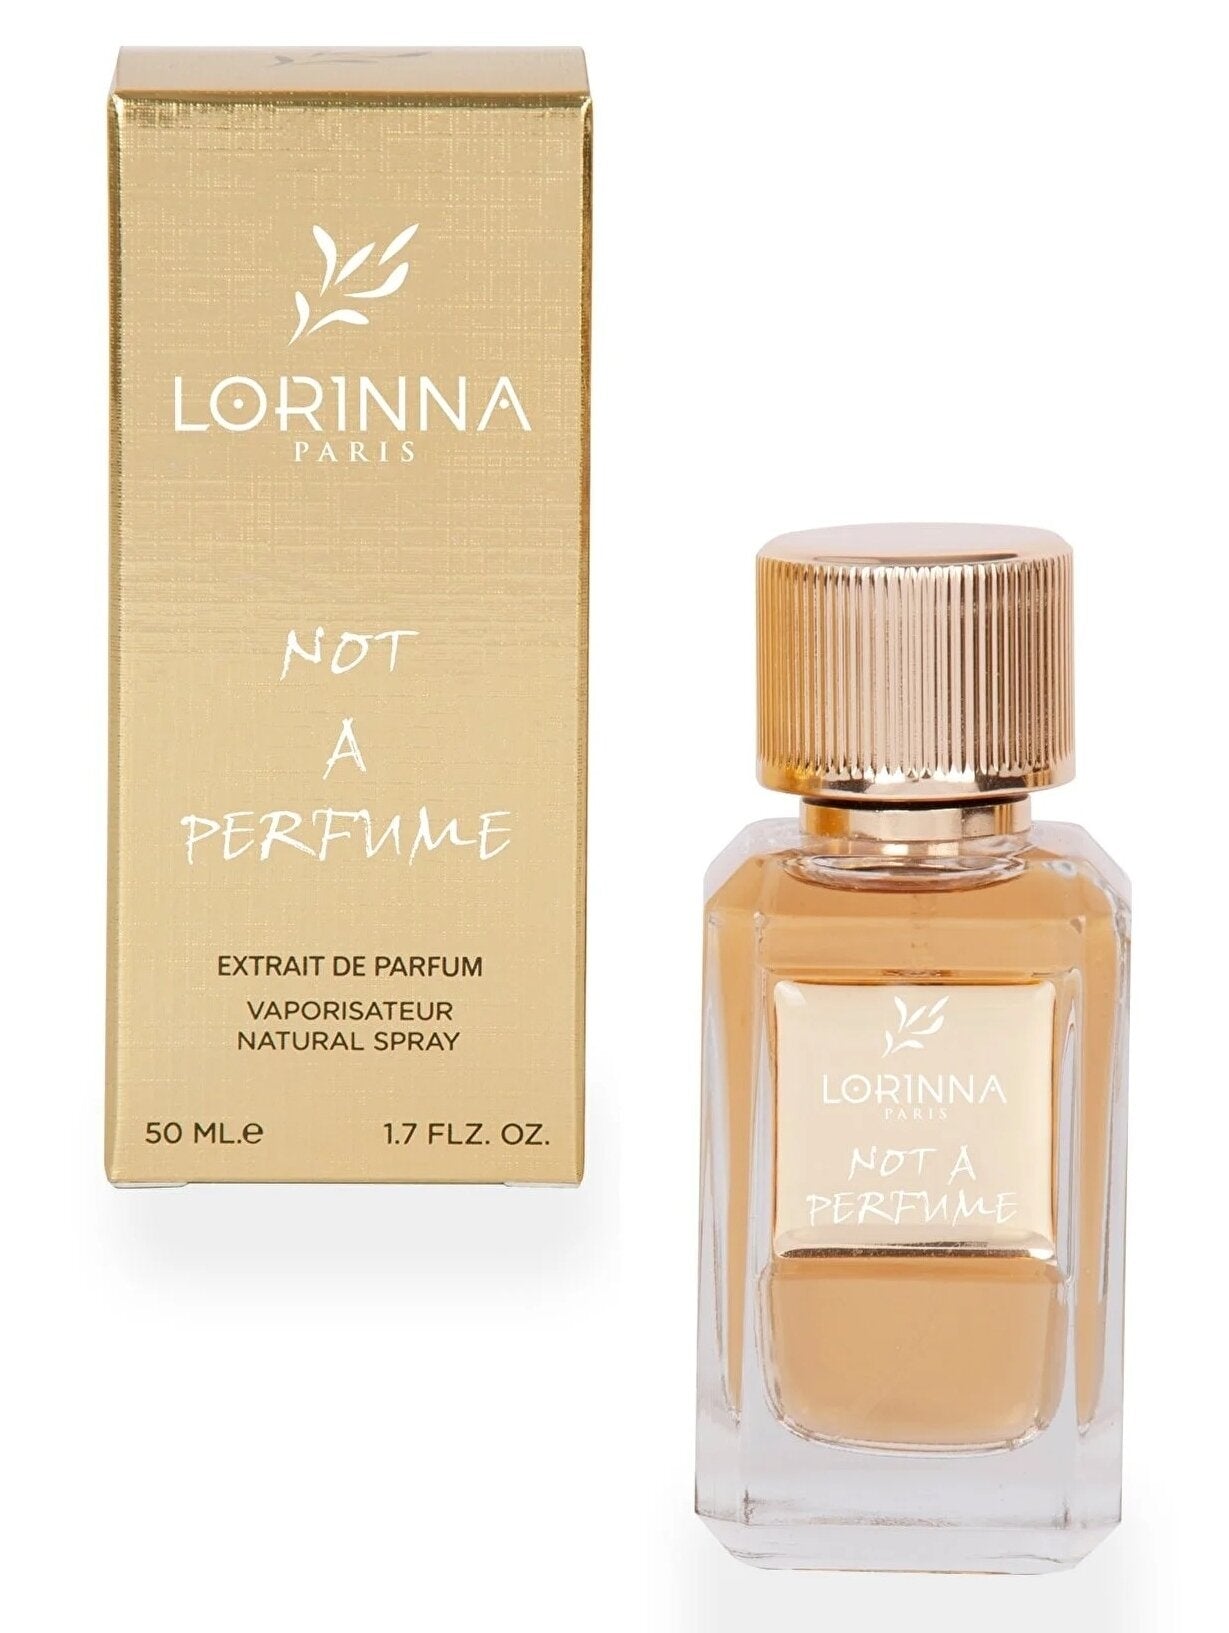 Lorinna Paris - Not a Perfume - Extrait de Parfum - 50 ML - Inspired by Julliete has a Gun not a Perfume